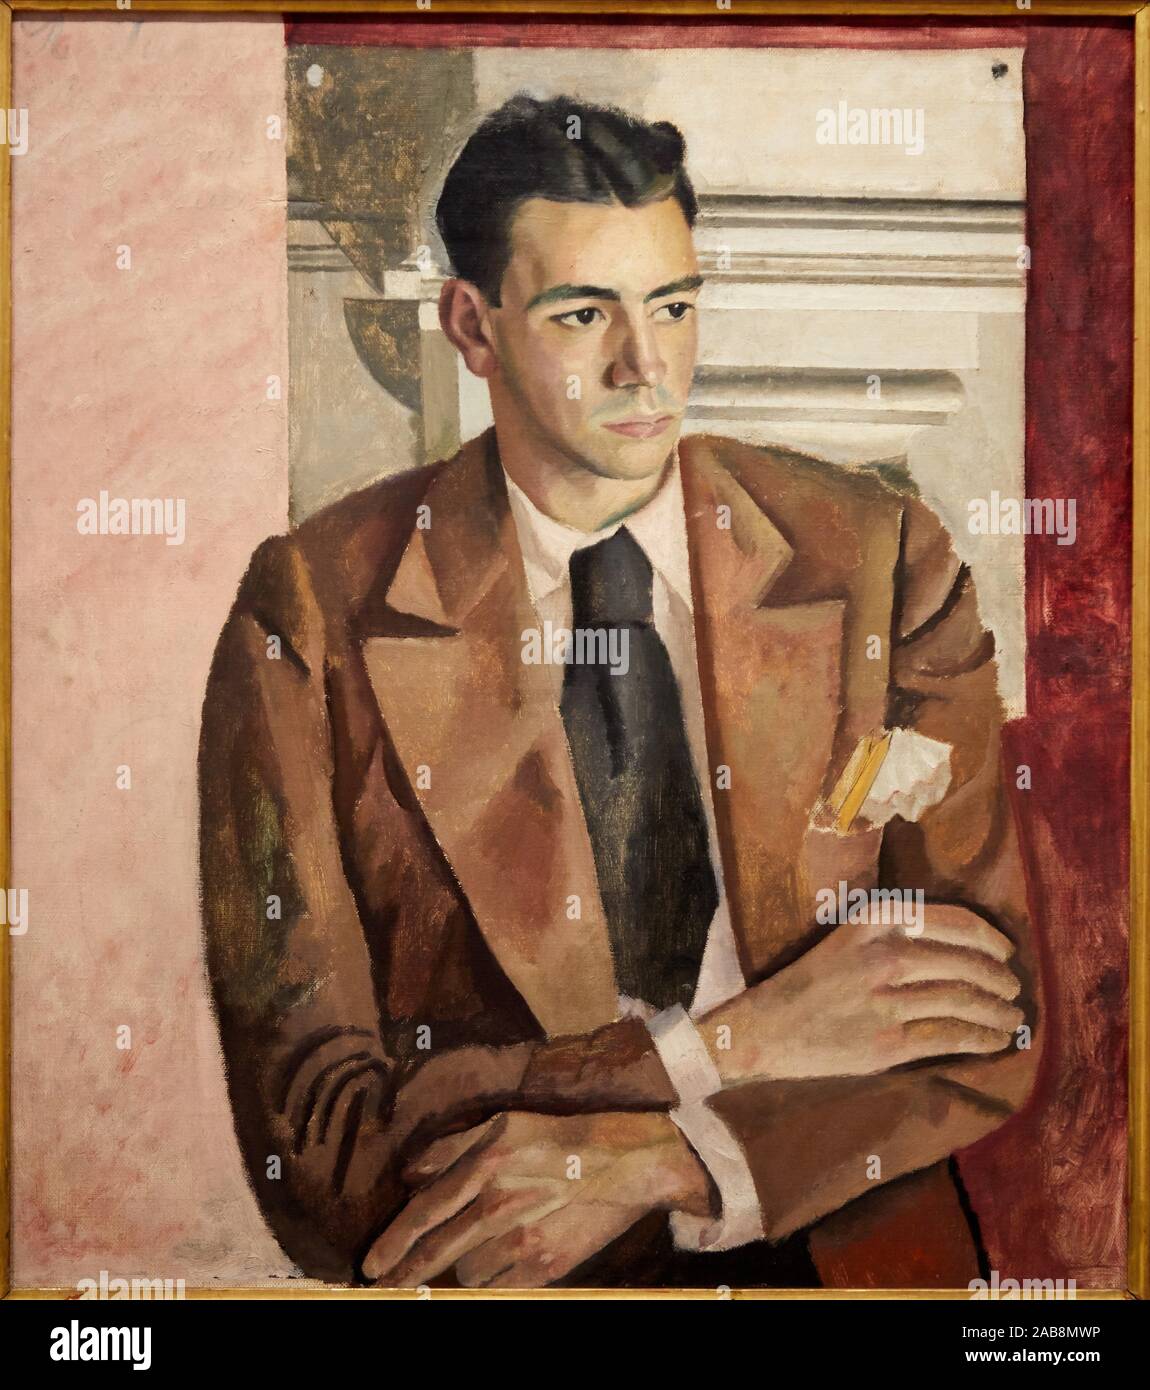 ''' Porträt des Malers Días Calleja'', C. 1930, Jesús Olasagasti (1907-1955), Museo de Bellas Artes, Bilbao, Vizcaya, Baskenland, Spanien Stockfoto